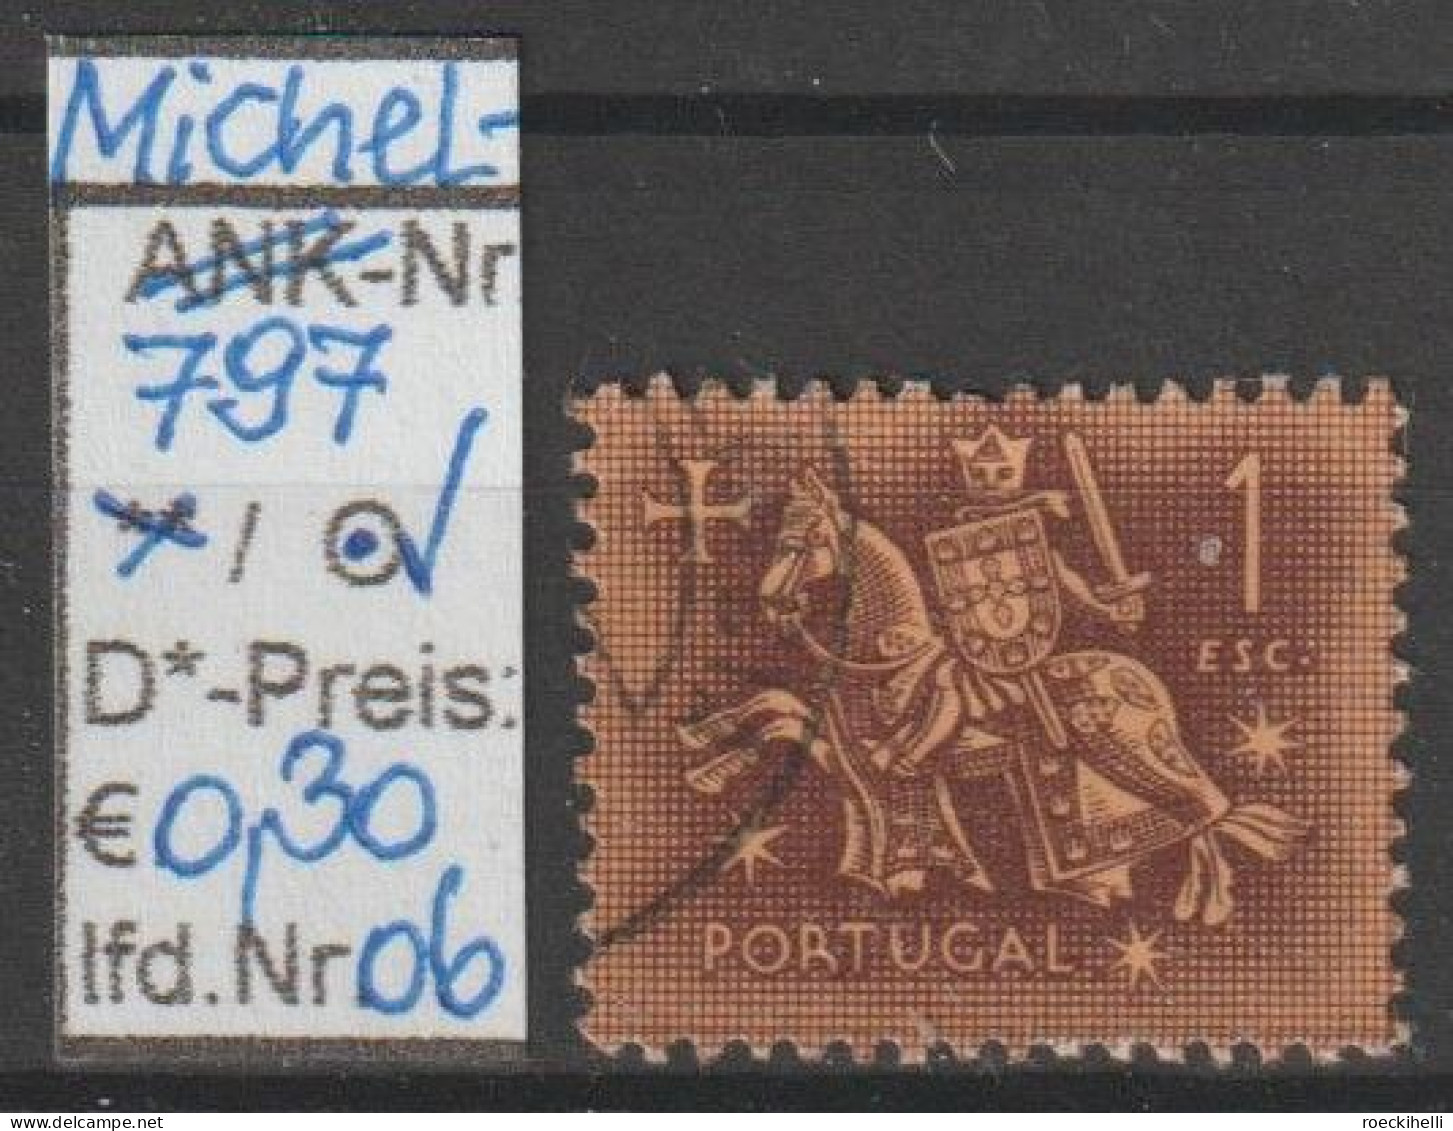 1953 - PORTUGAL - FM/DM "Ritter zu Pferd" 1 E karminbraun - o gestempelt - s.Scan  (port 797o 01-14)